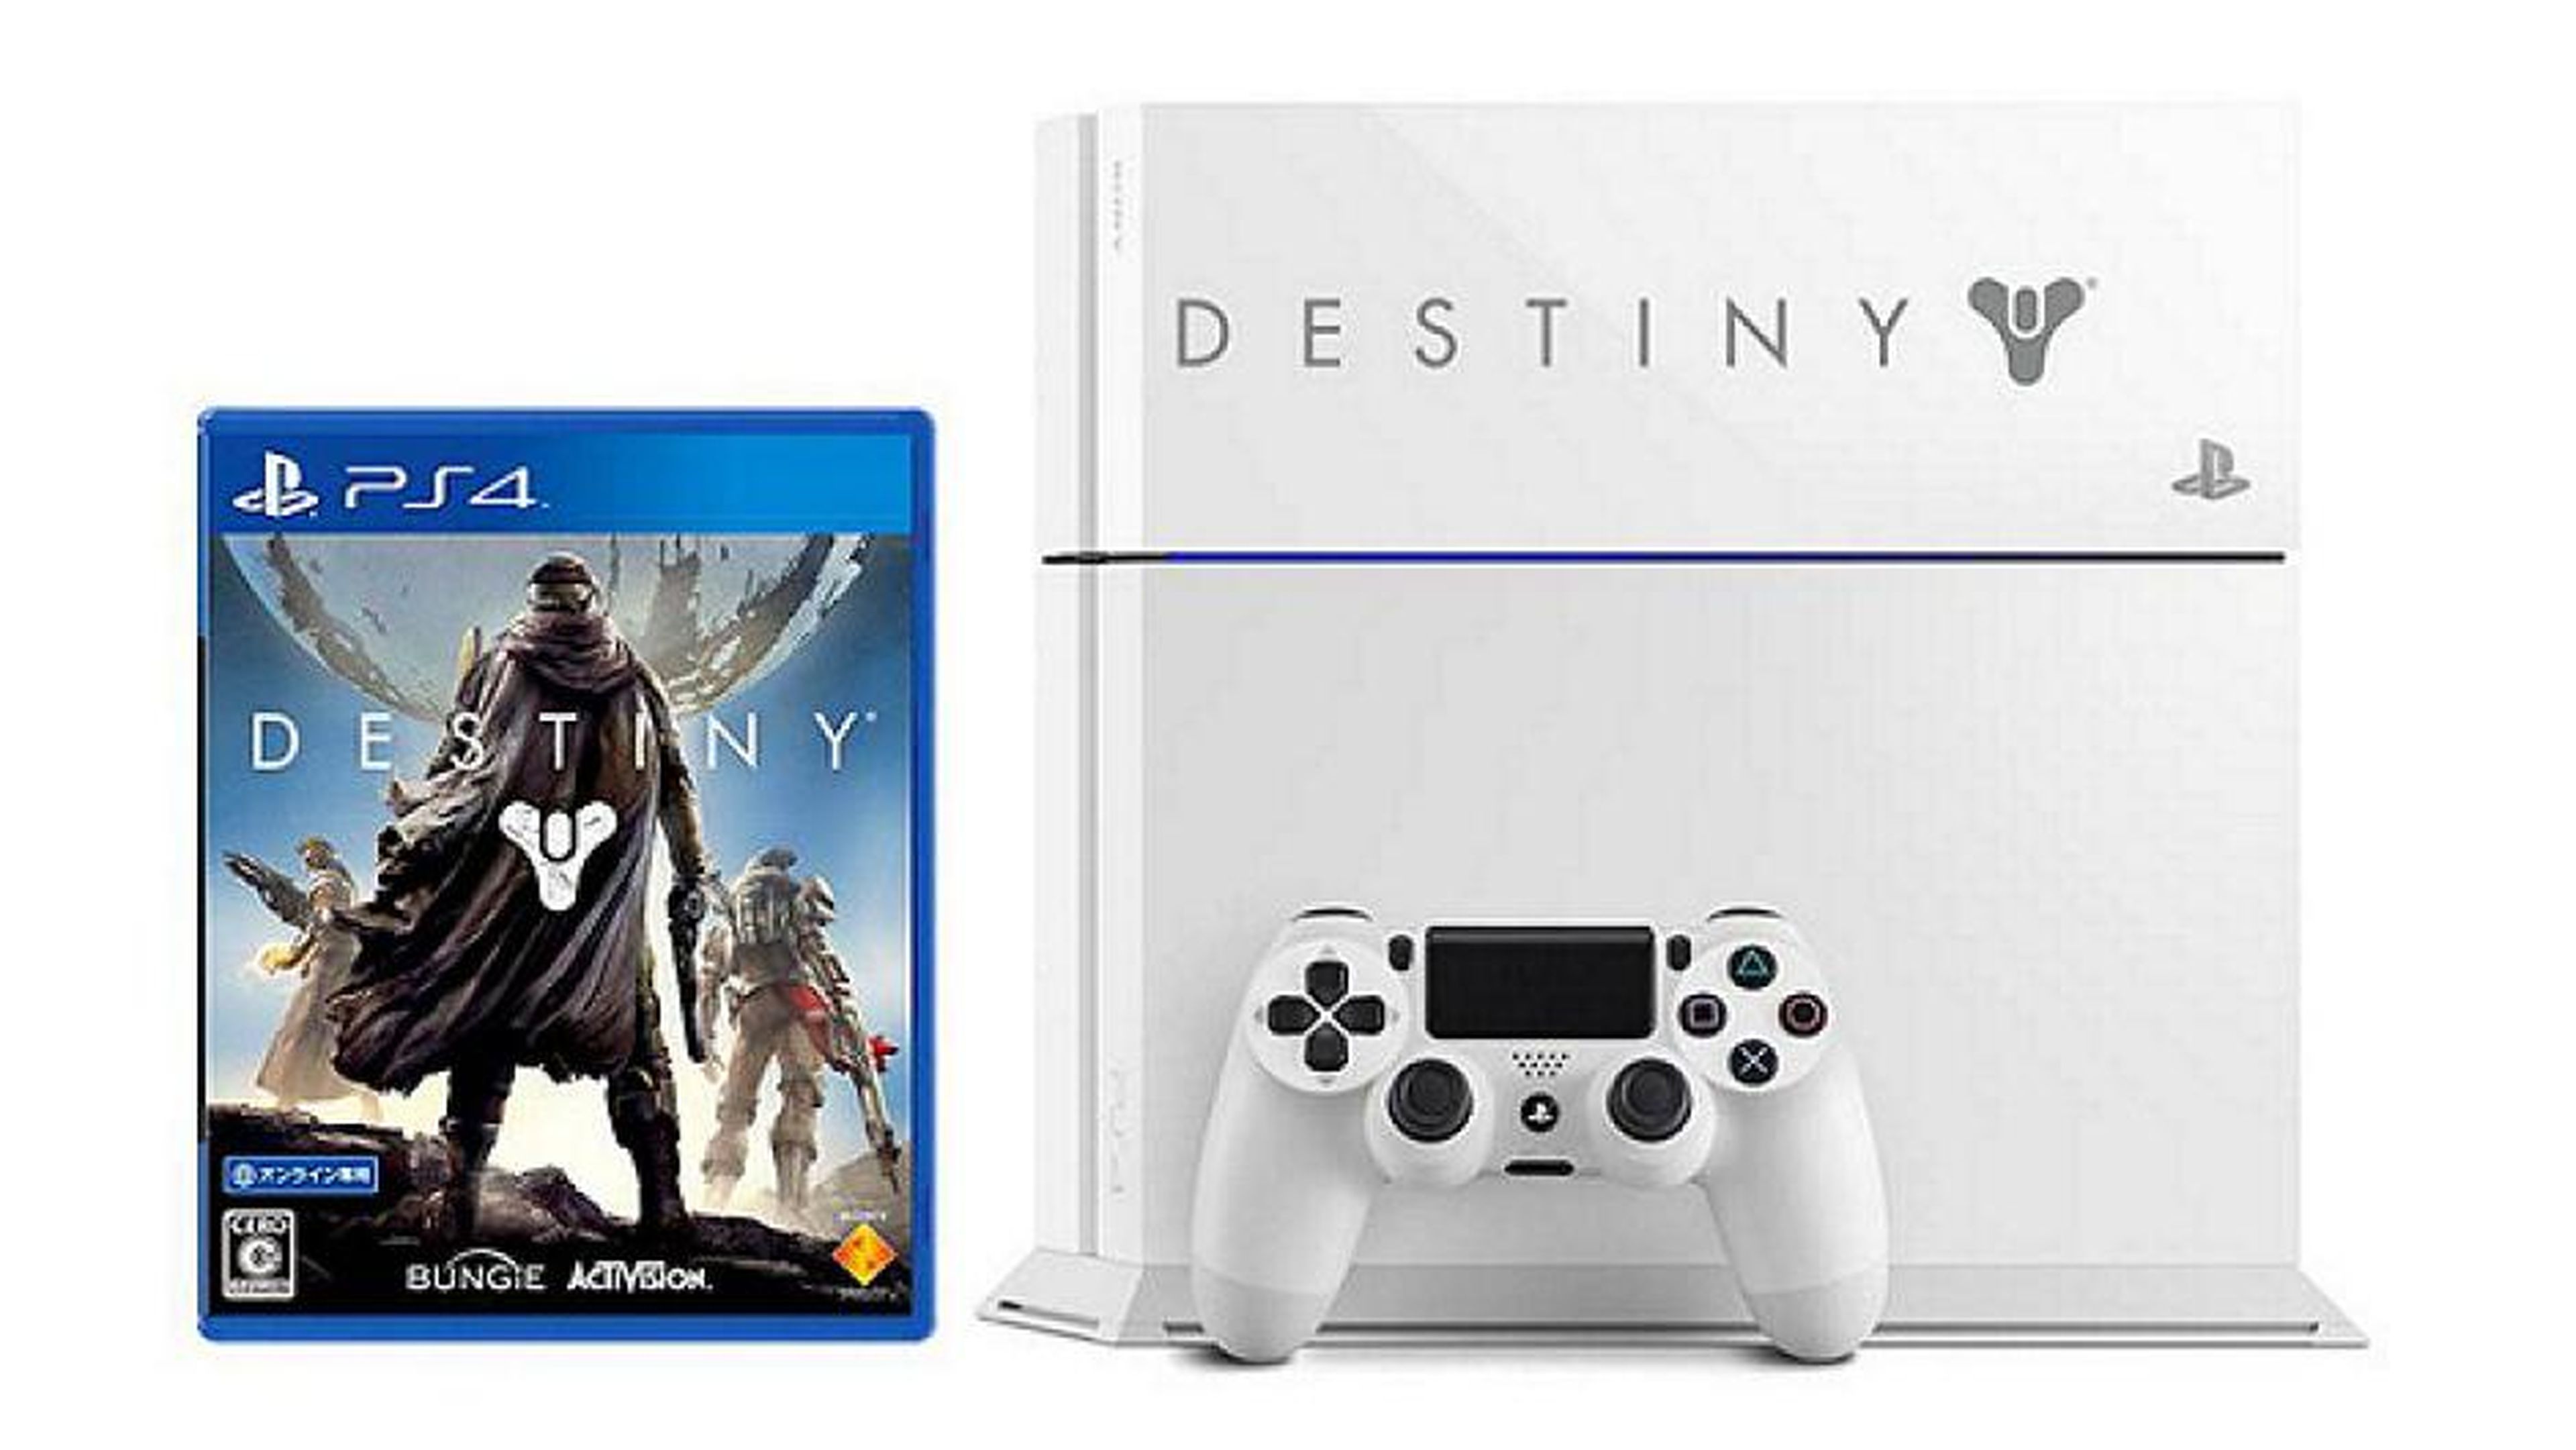 Habrá ediciones limitadas de PS4 basadas en Destiny y The Last of Us en Japón